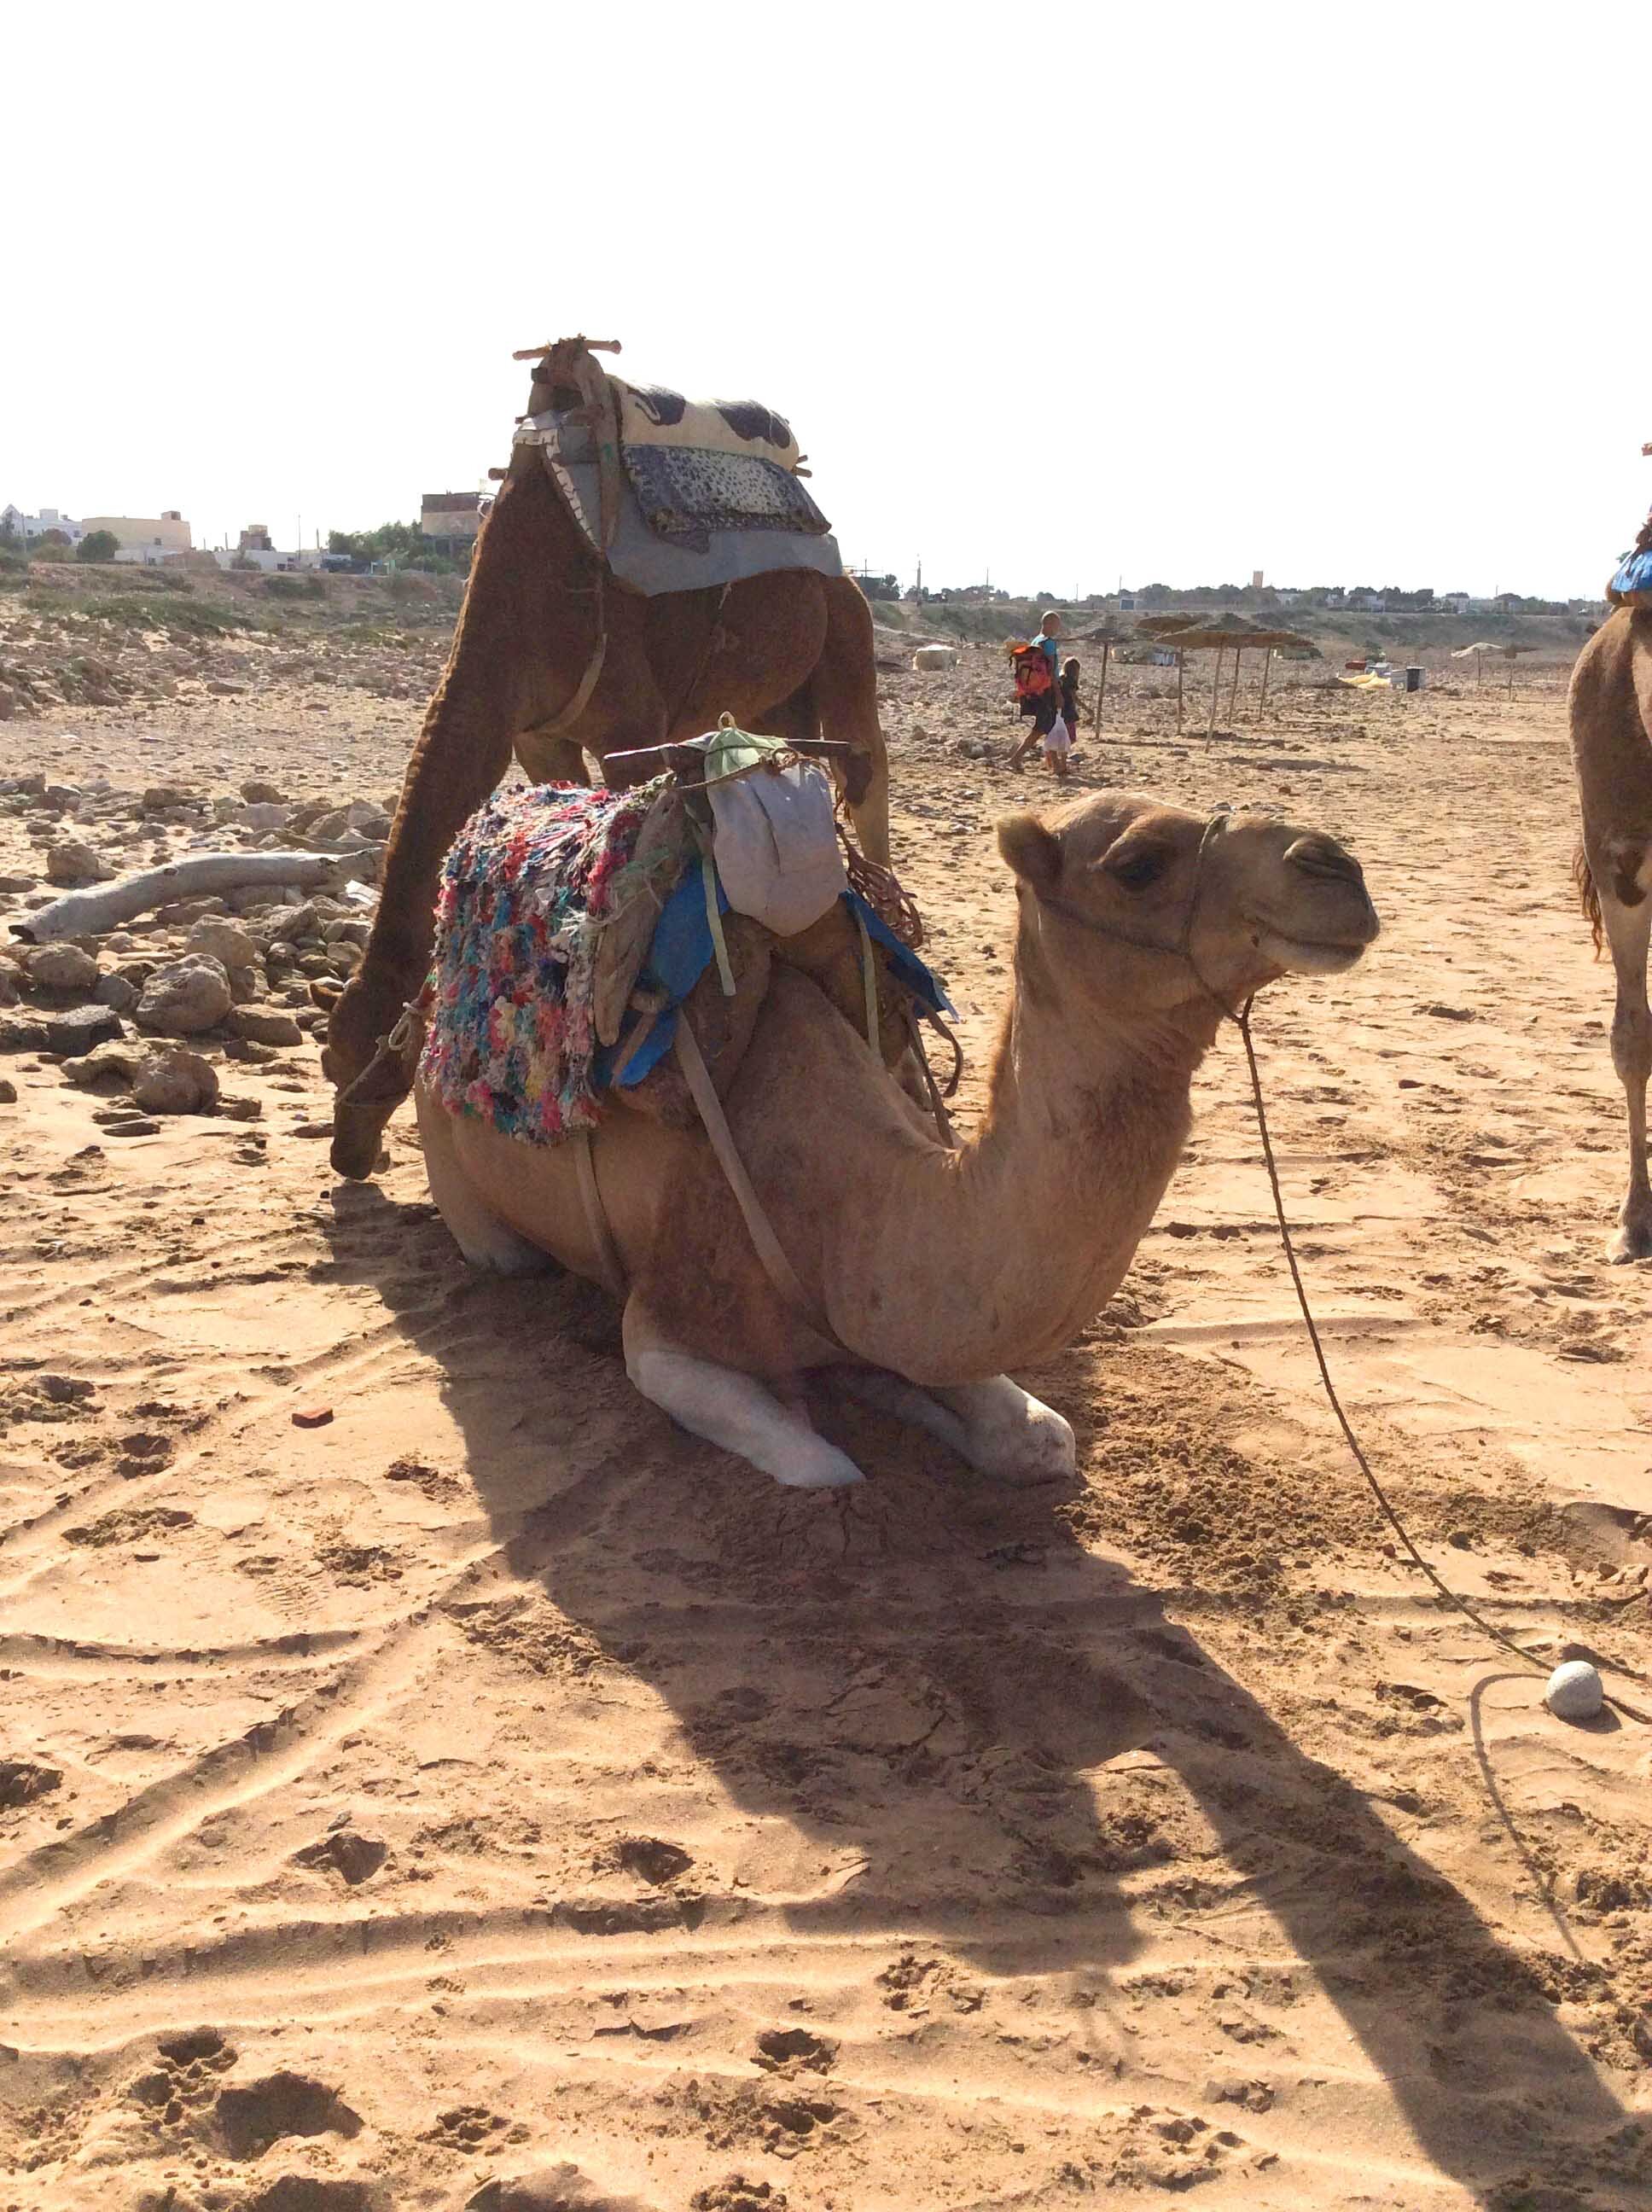 Camel.jpg